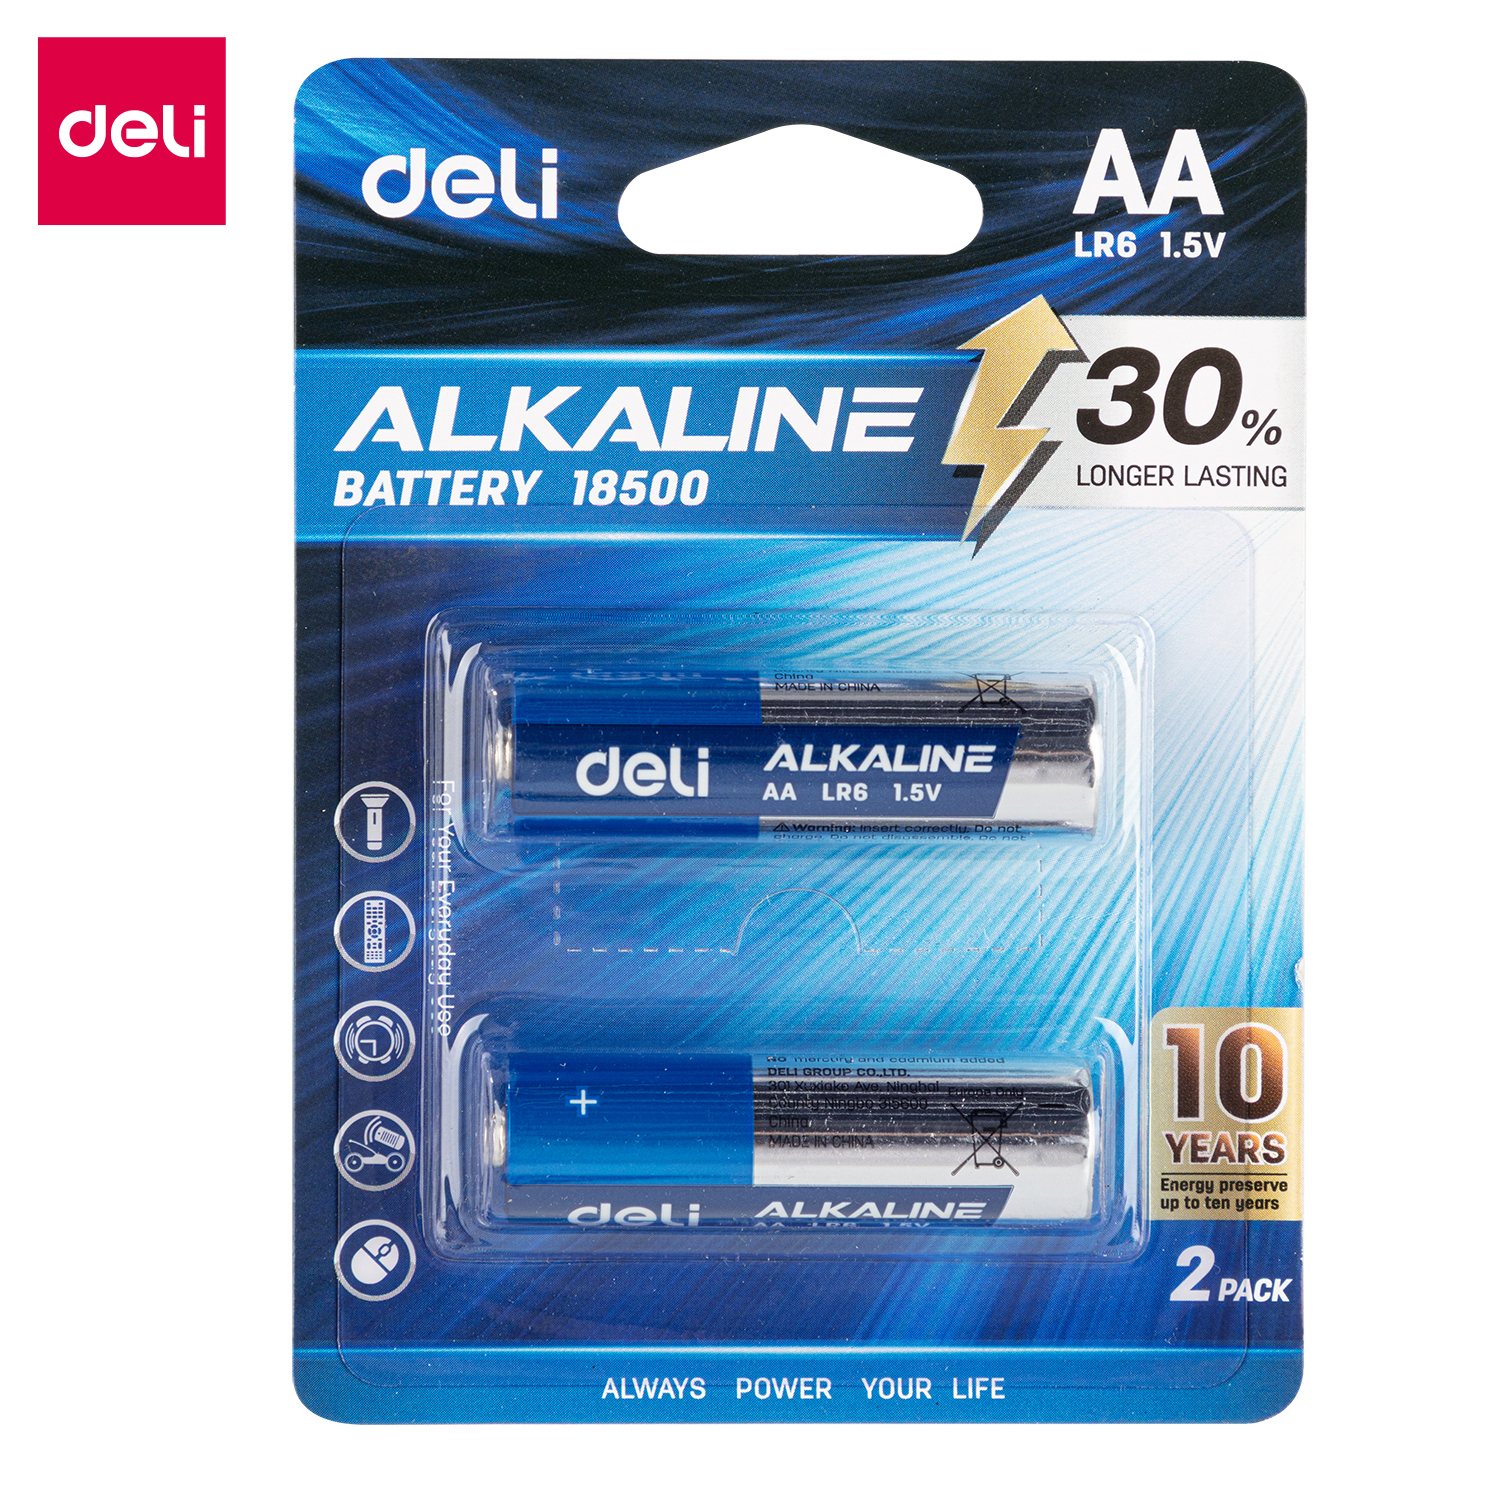 Deli-E18500 Alkaline Battery